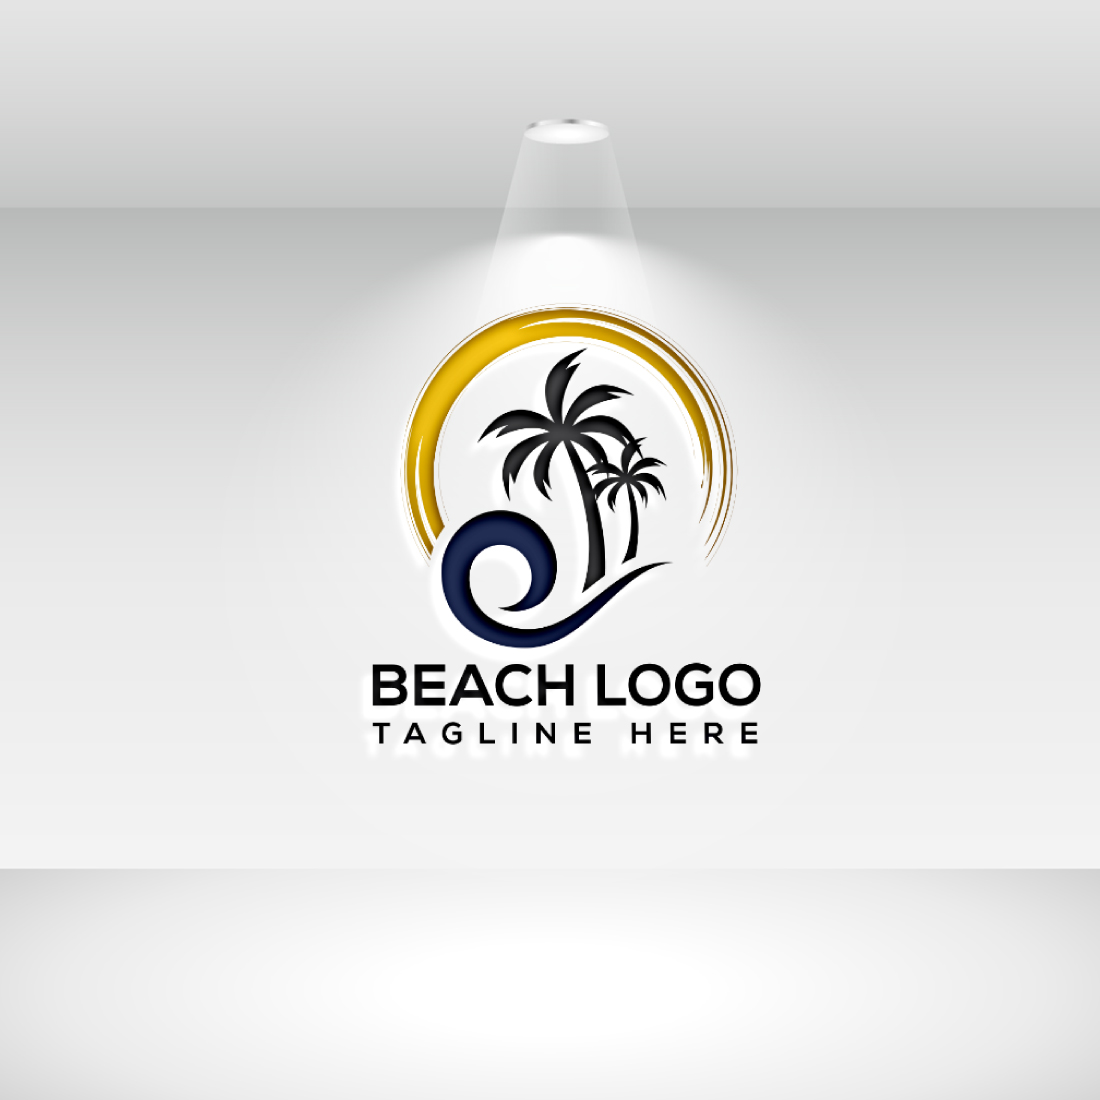 Tropical Beach Modern Logo Vector cover image.